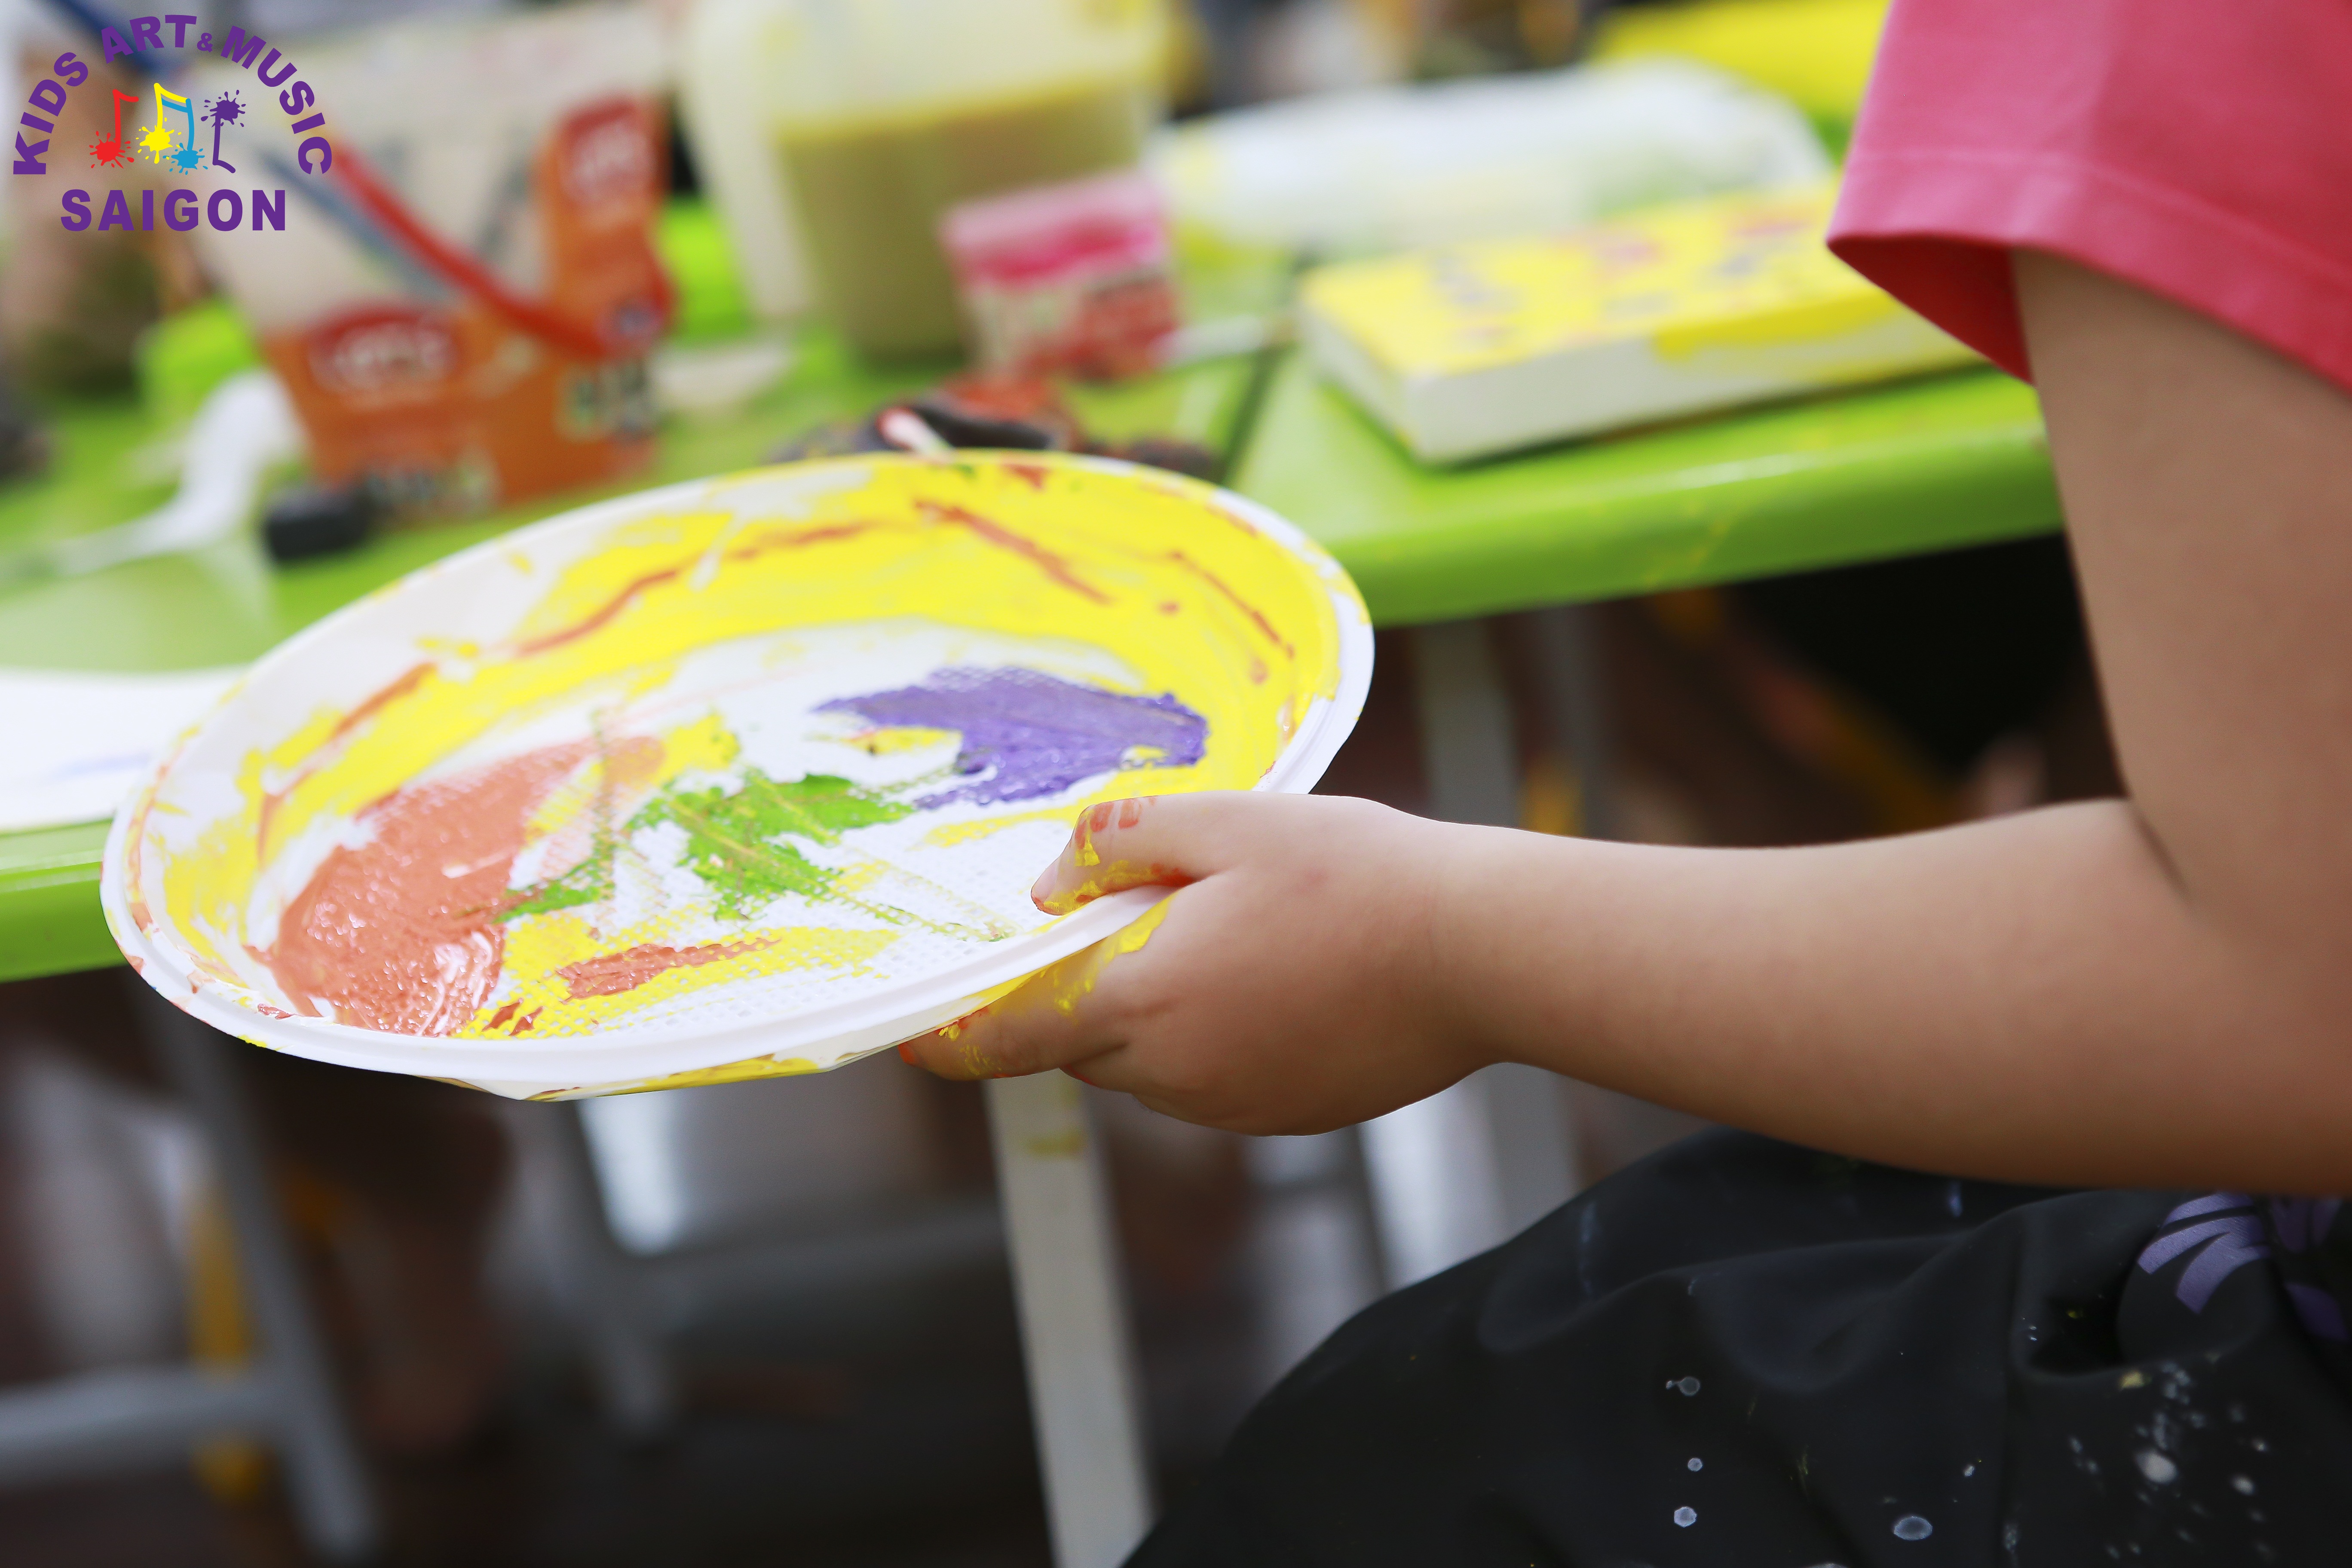 Trung tâm dạy vẽ cho bé là nơi tuyệt vời để trẻ em của bạn học cách sáng tạo và thể hiện tài năng của mình. Hãy xem hình ảnh liên quan để tìm hiểu thêm về chương trình và các hoạt động thú vị tại trung tâm.